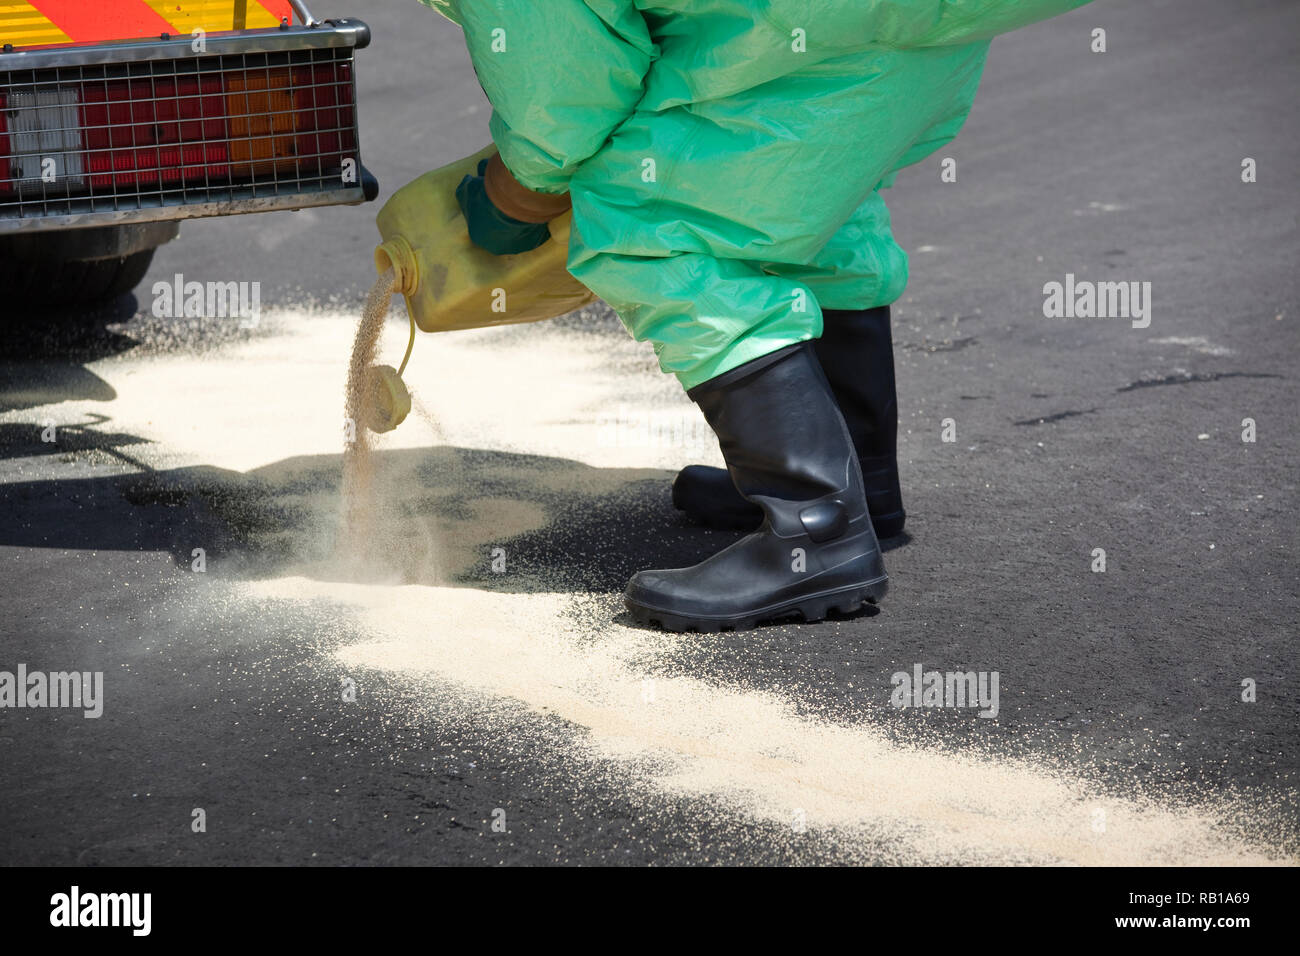 Uomo in abbigliamento protettivo pulizia dopo il disastro chimico. L'ingranaggio gonfiabile protegge anche contro la contaminazione con particelle radioattive contro Foto Stock